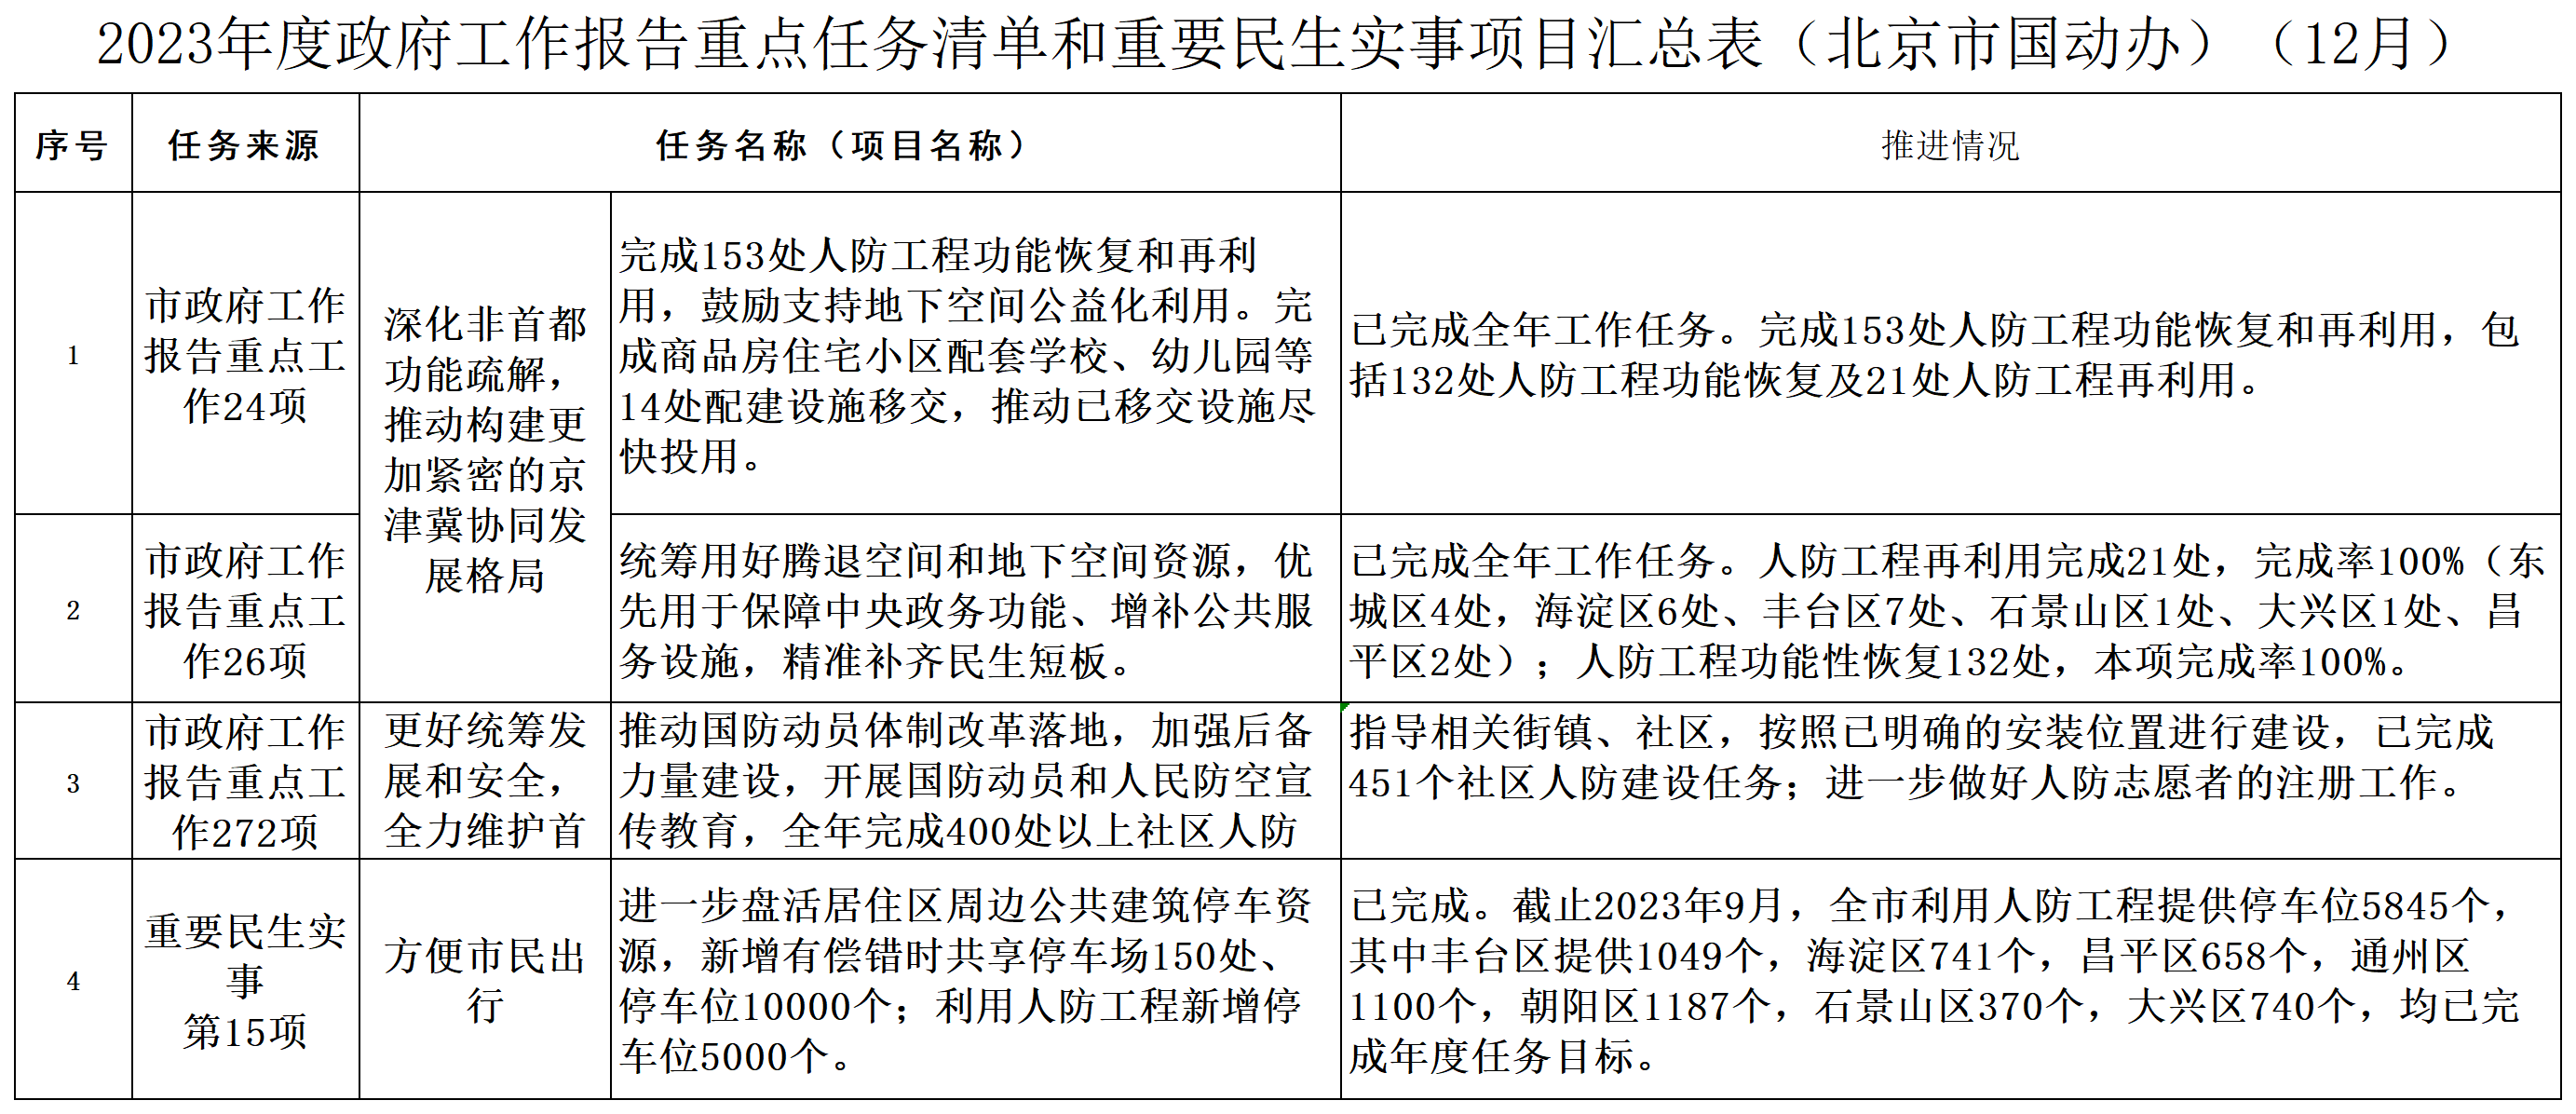 3.5 2023年度政府工作报告重点任务清单和重要民生实事项目汇总表（北京市国动办）（12月）（公示公告、信息公开专栏）.png